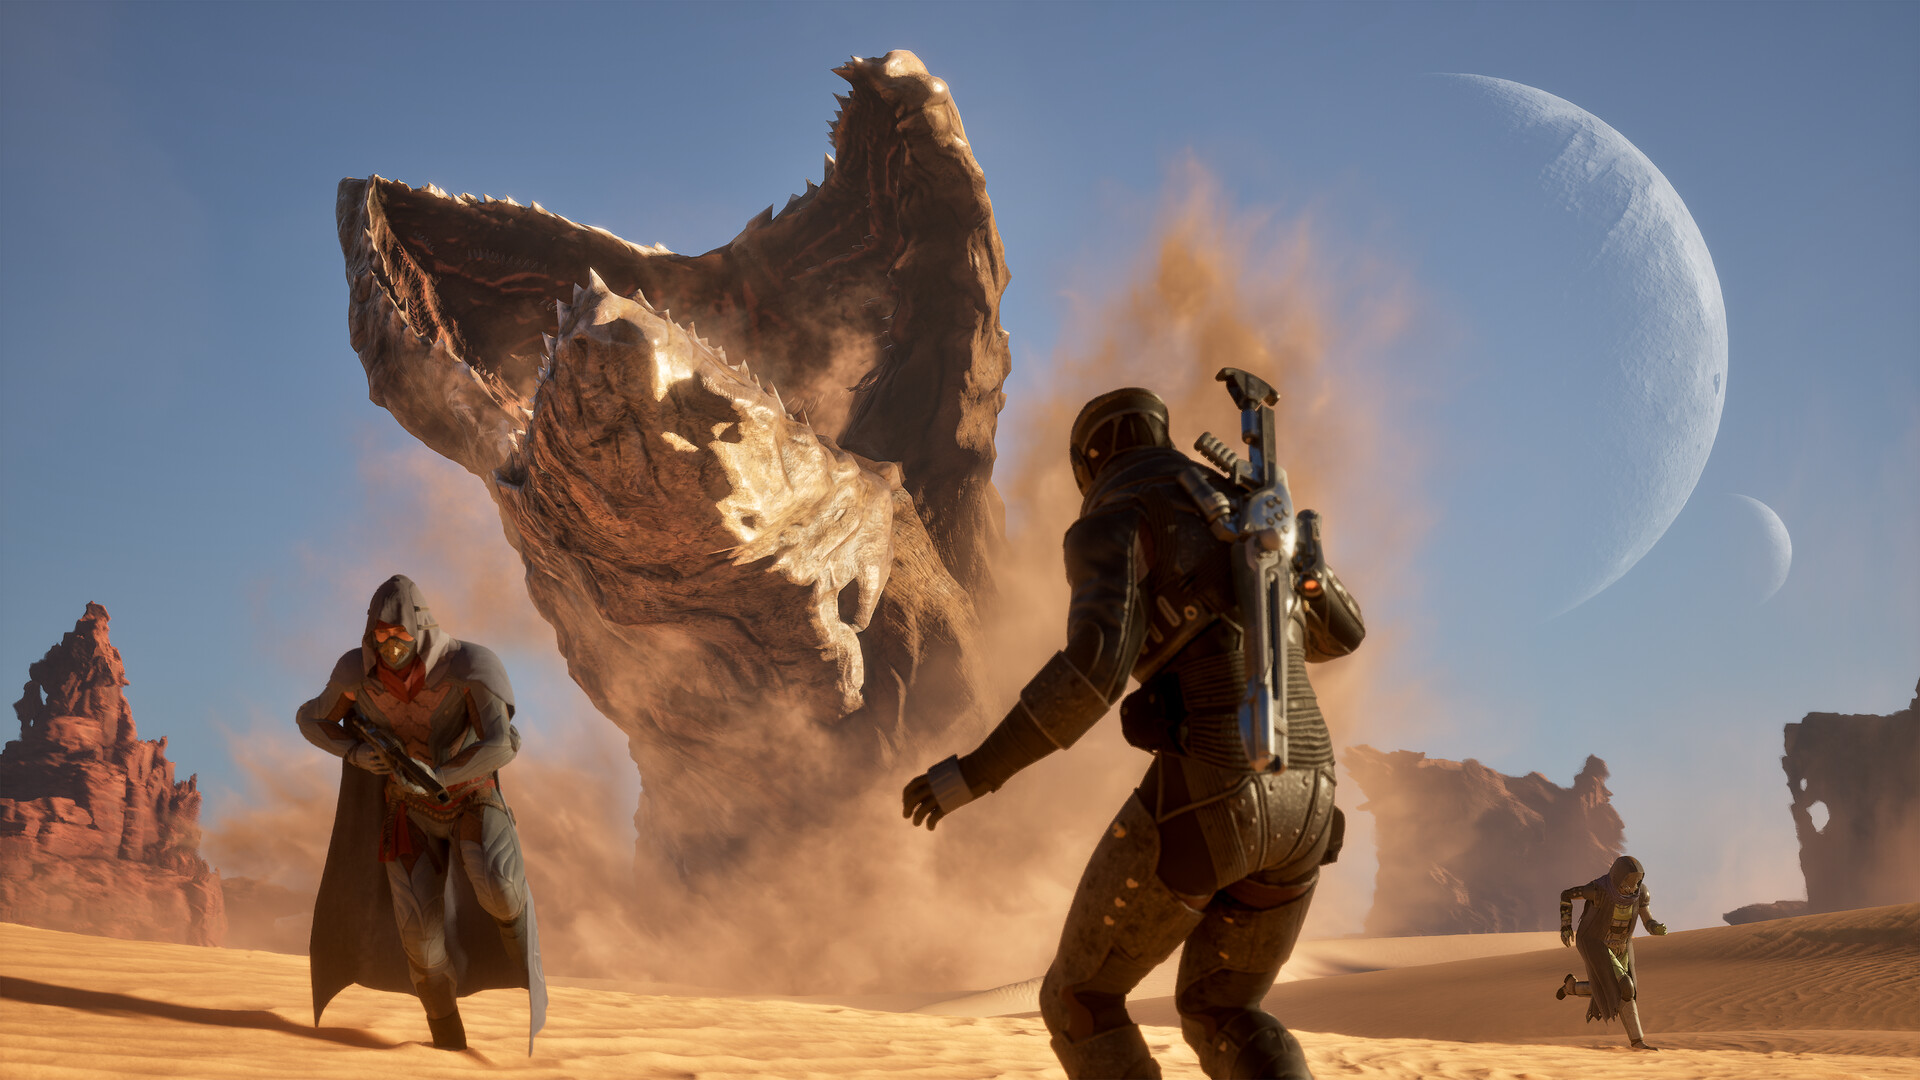 Scena z gry komputerowej przedstawiająca postacie w futurystycznych strojach walczące z wielkim piaszczystym potworem na tle pustyni i dwóch księżyców na niebie.